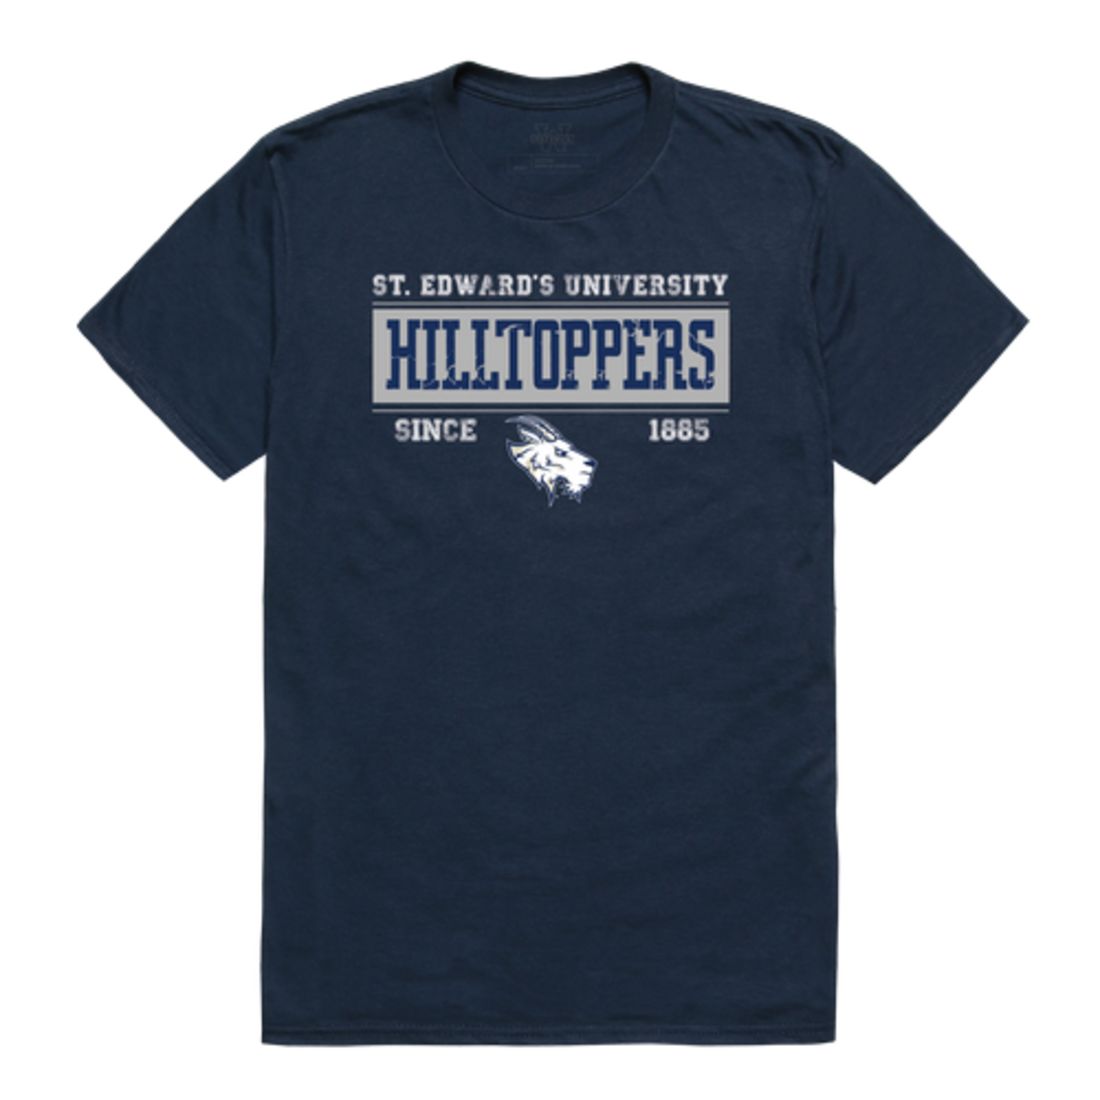 St. Edward's University Hilltoppers Established T-Shirt